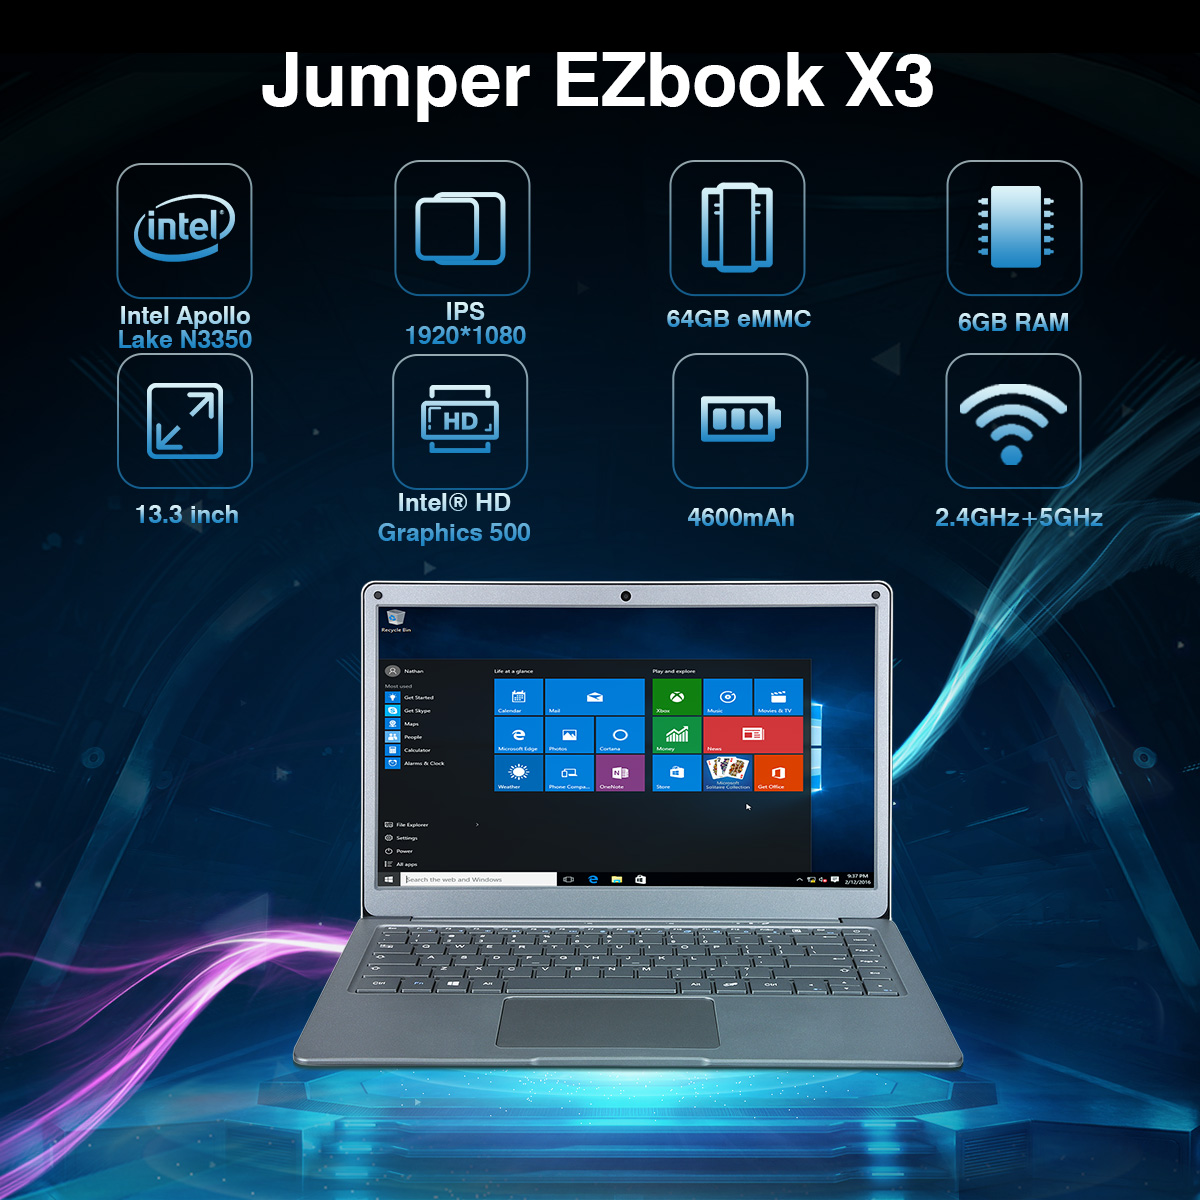 Jumper EZbook X3